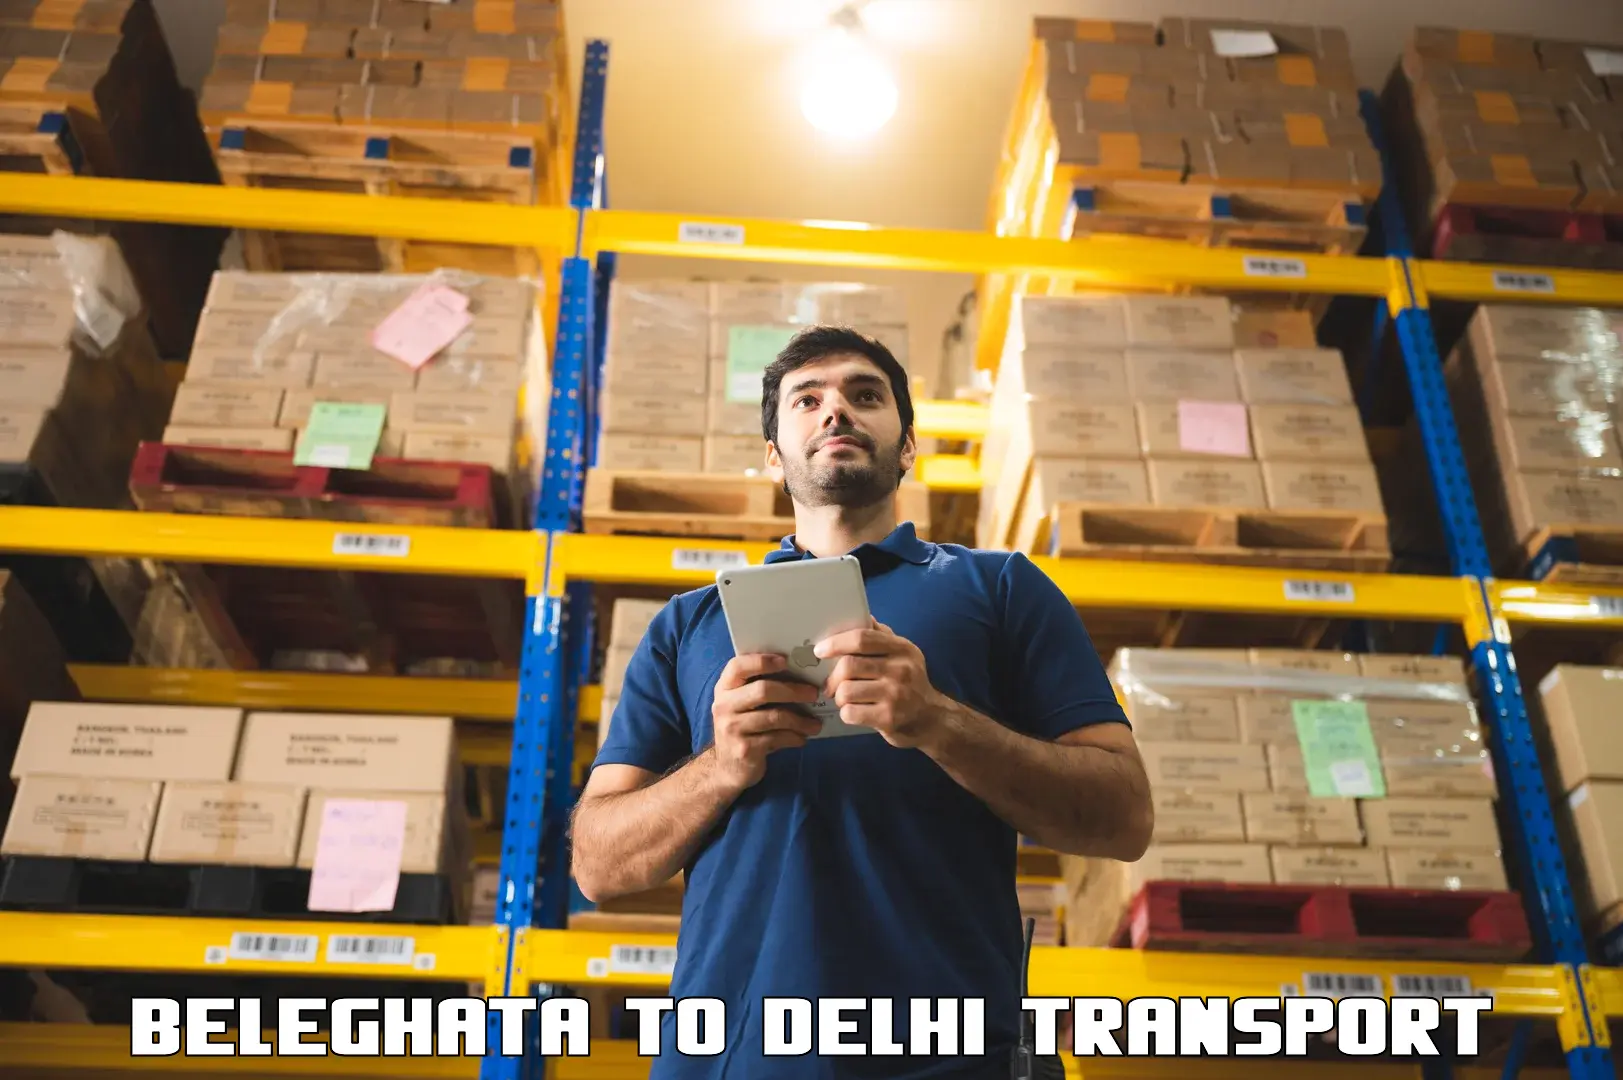 Sending bike to another city Beleghata to IIT Delhi